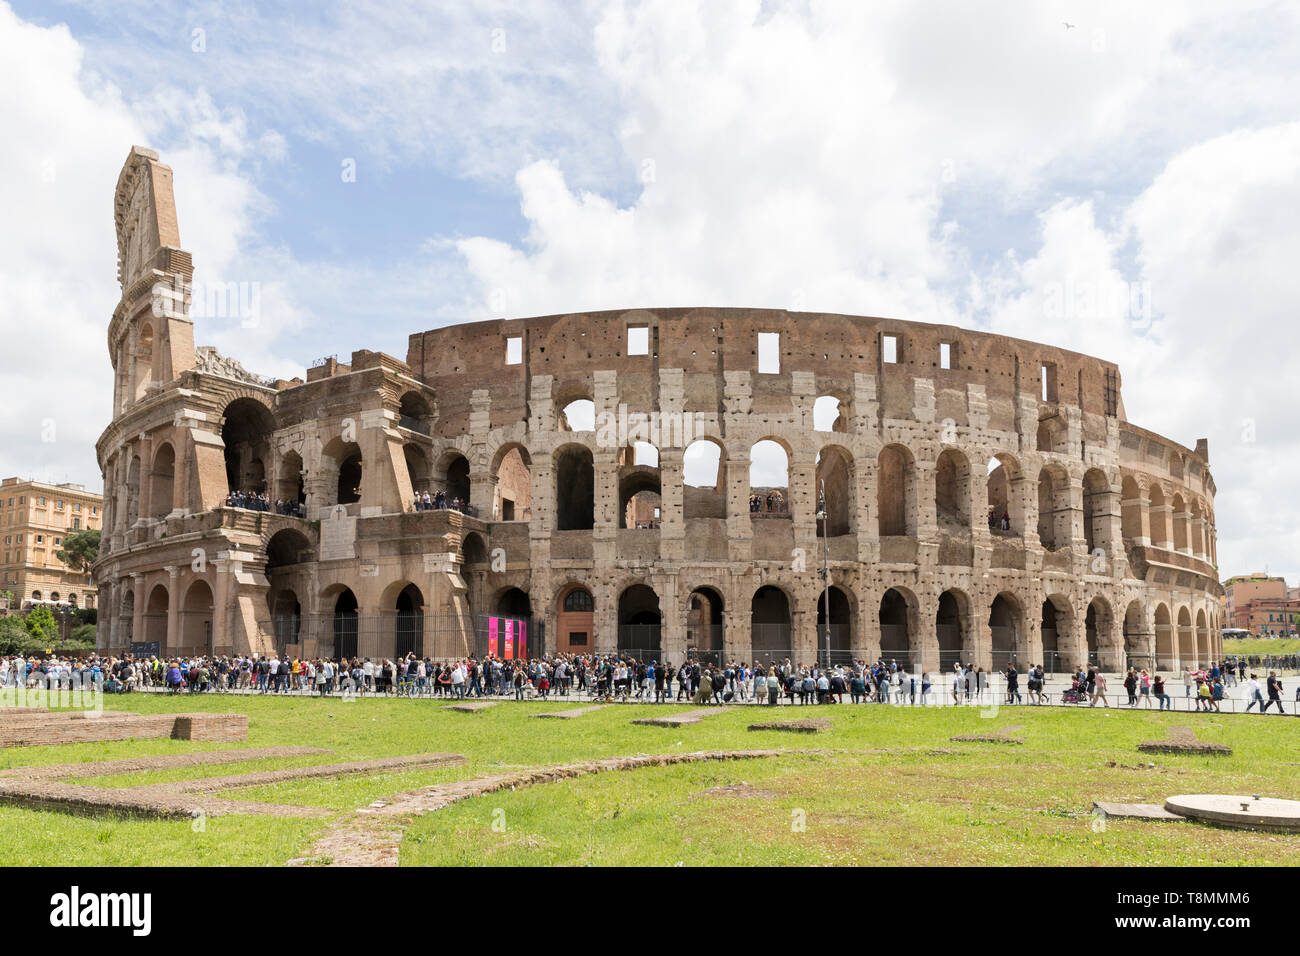 Italie, Rome : vestiges romains du Colisée (Colosseo), Coliseum ou site touristique, inscrit comme site du patrimoine mondial de l'UNESCO Banque D'Images